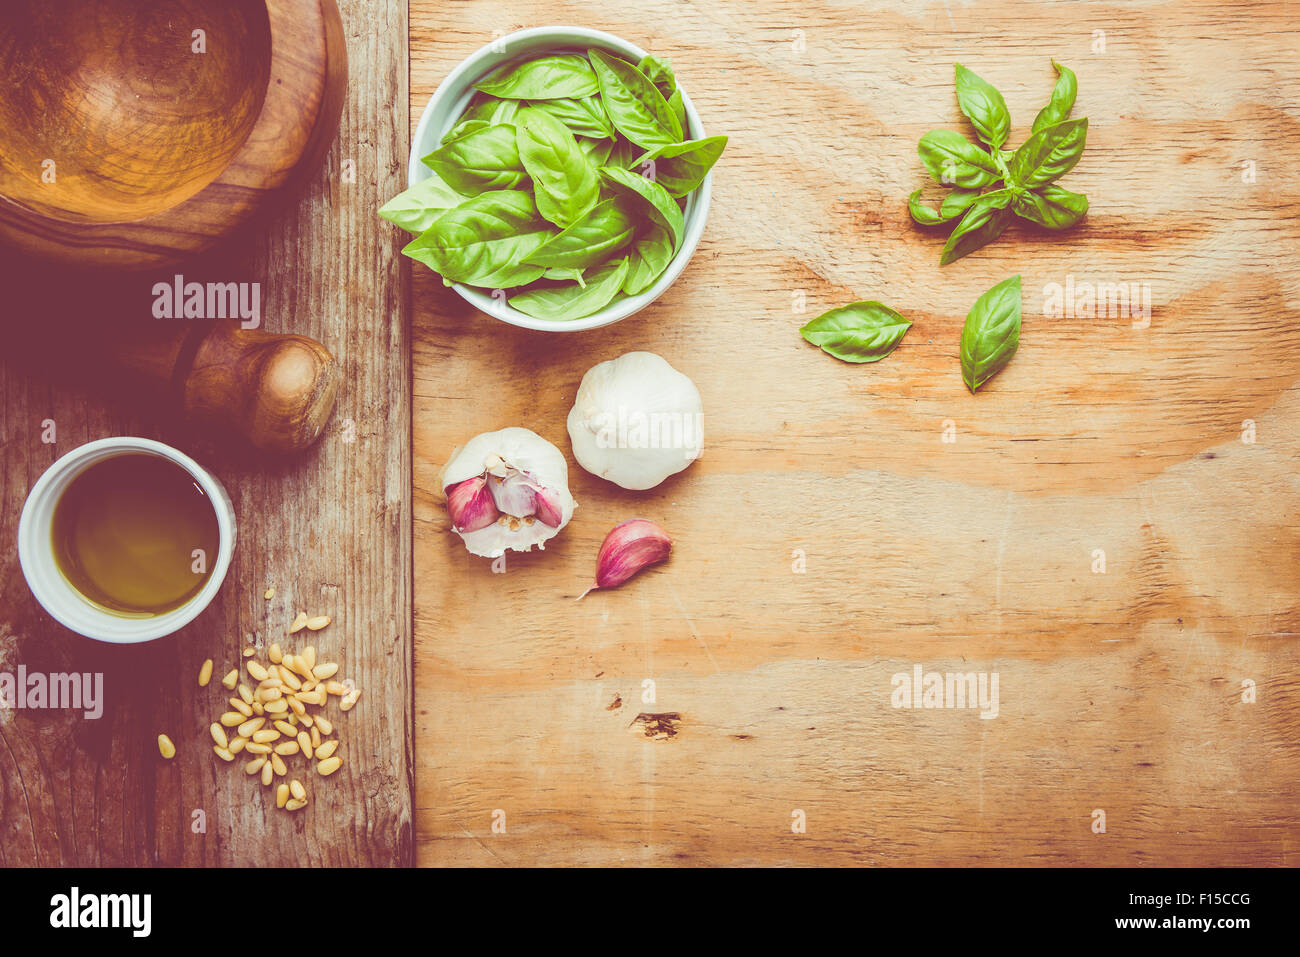 Machen Nudeln mit Pesto mit dem ursprünglichen Rezept von Genua. Hölzernen Hintergrund und Zubehör vermitteln das Gefühl von Italien. Stockfoto